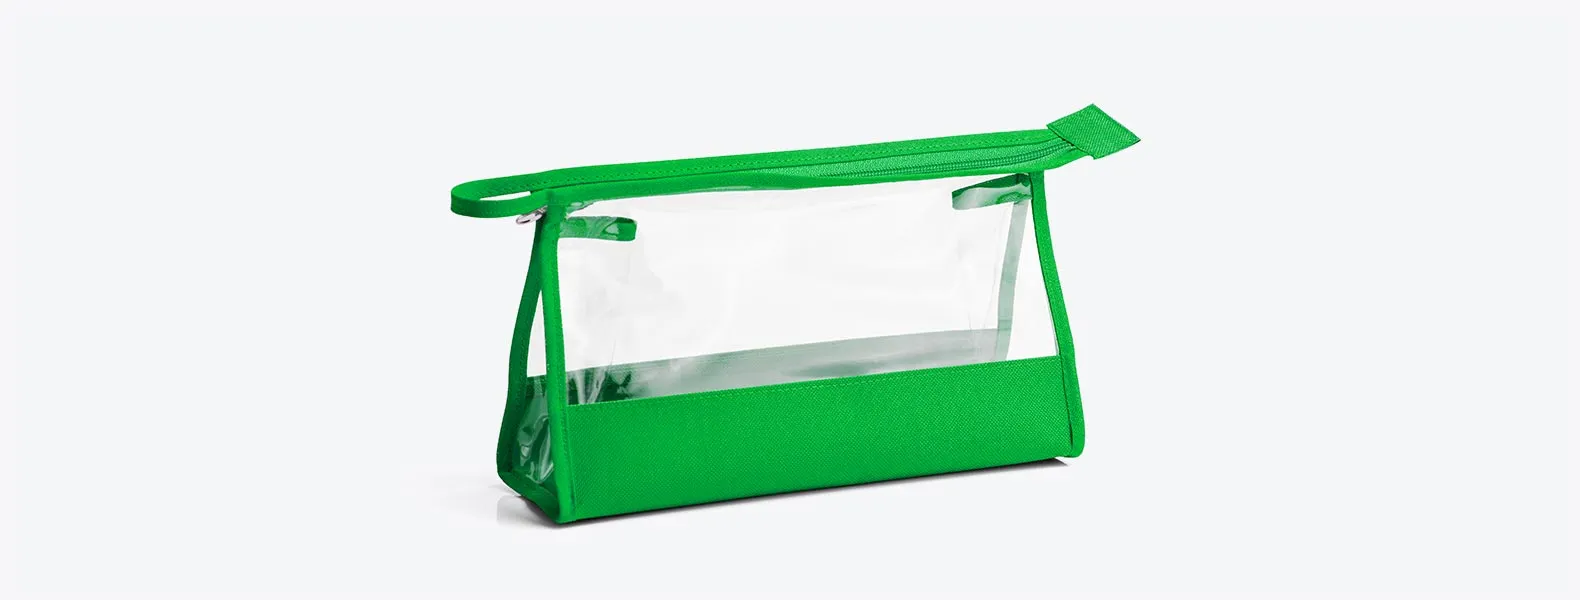 Necessaire na cor verde transparente confeccionada em PVC / Nylon 600. Conta com fechamento em zíper e alça. Disponível nas cores preta, azul, vermelha e verde.